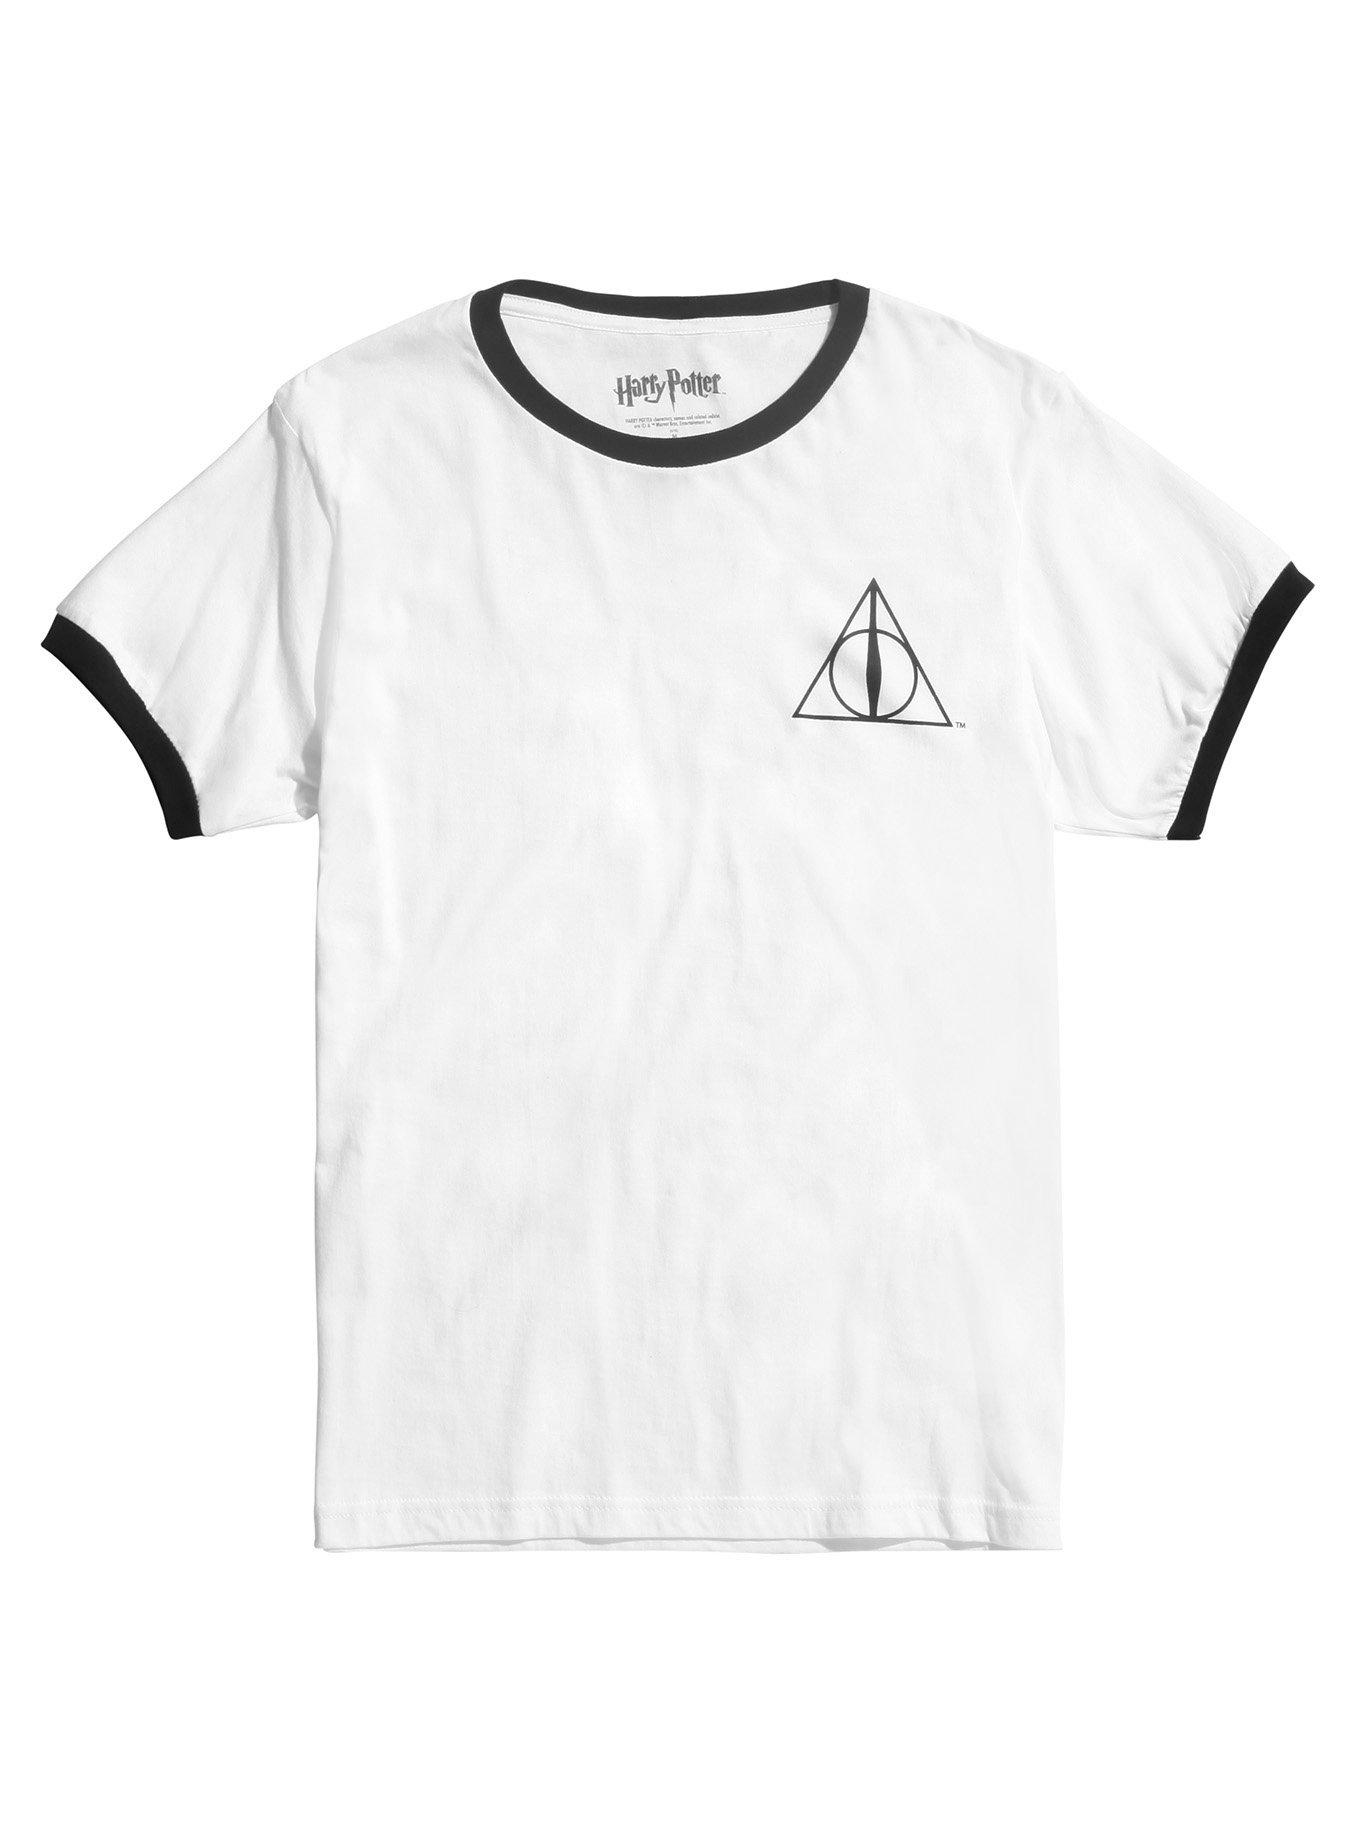 Harry Potter Deathly Hallows Ringer T-Shirt, BLACK, hi-res